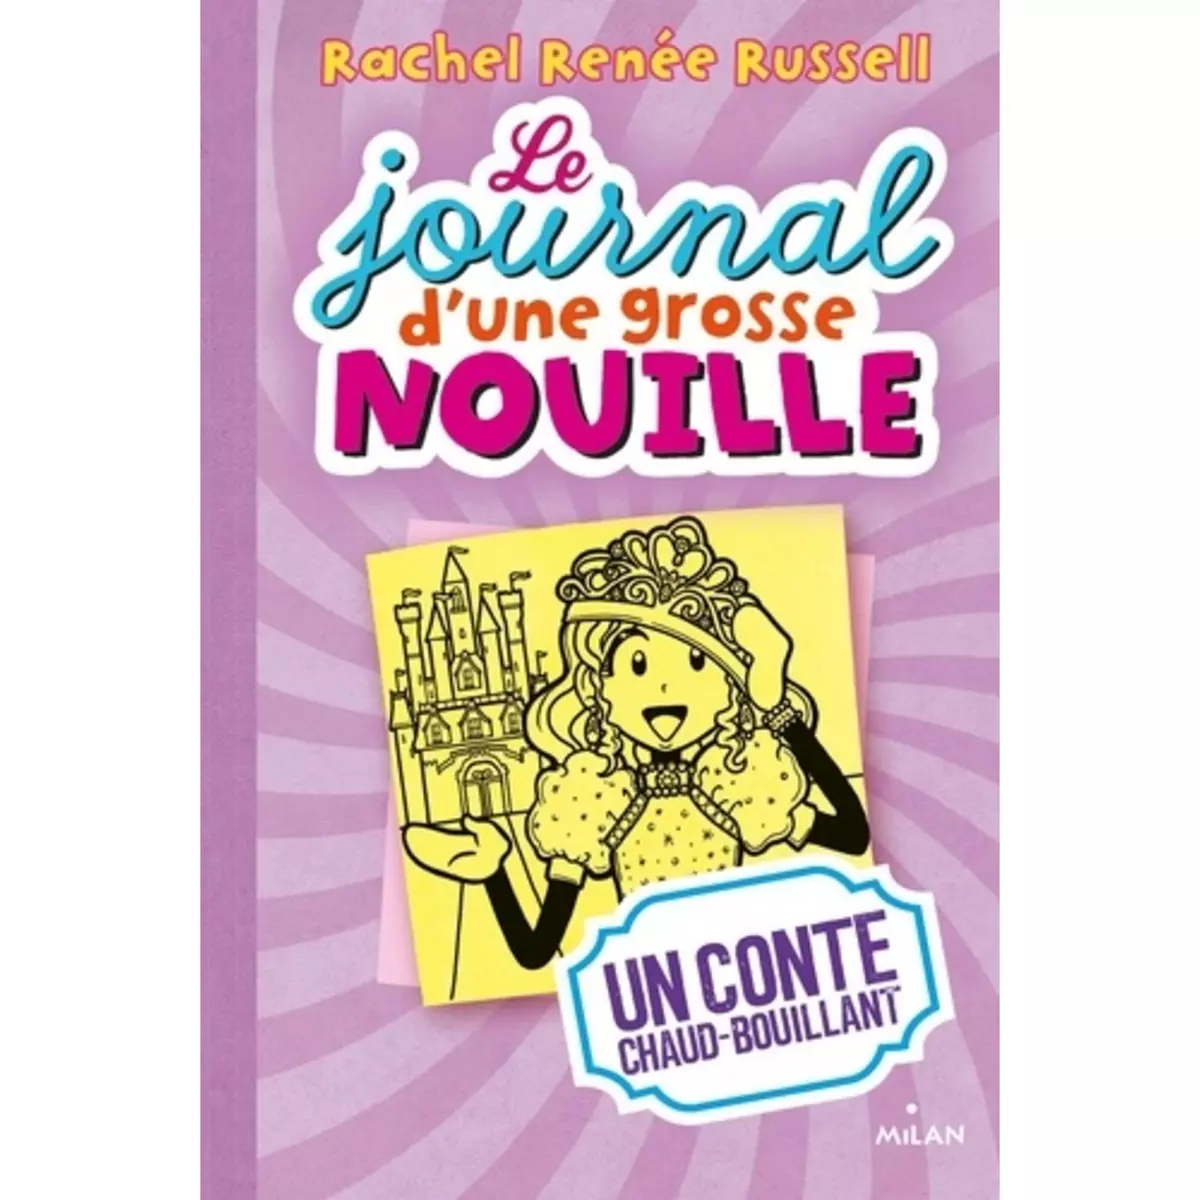  LE JOURNAL D'UNE GROSSE NOUILLE TOME 8 : UN CONTE CHAUD-BOUILLANT, Russell Rachel Renée